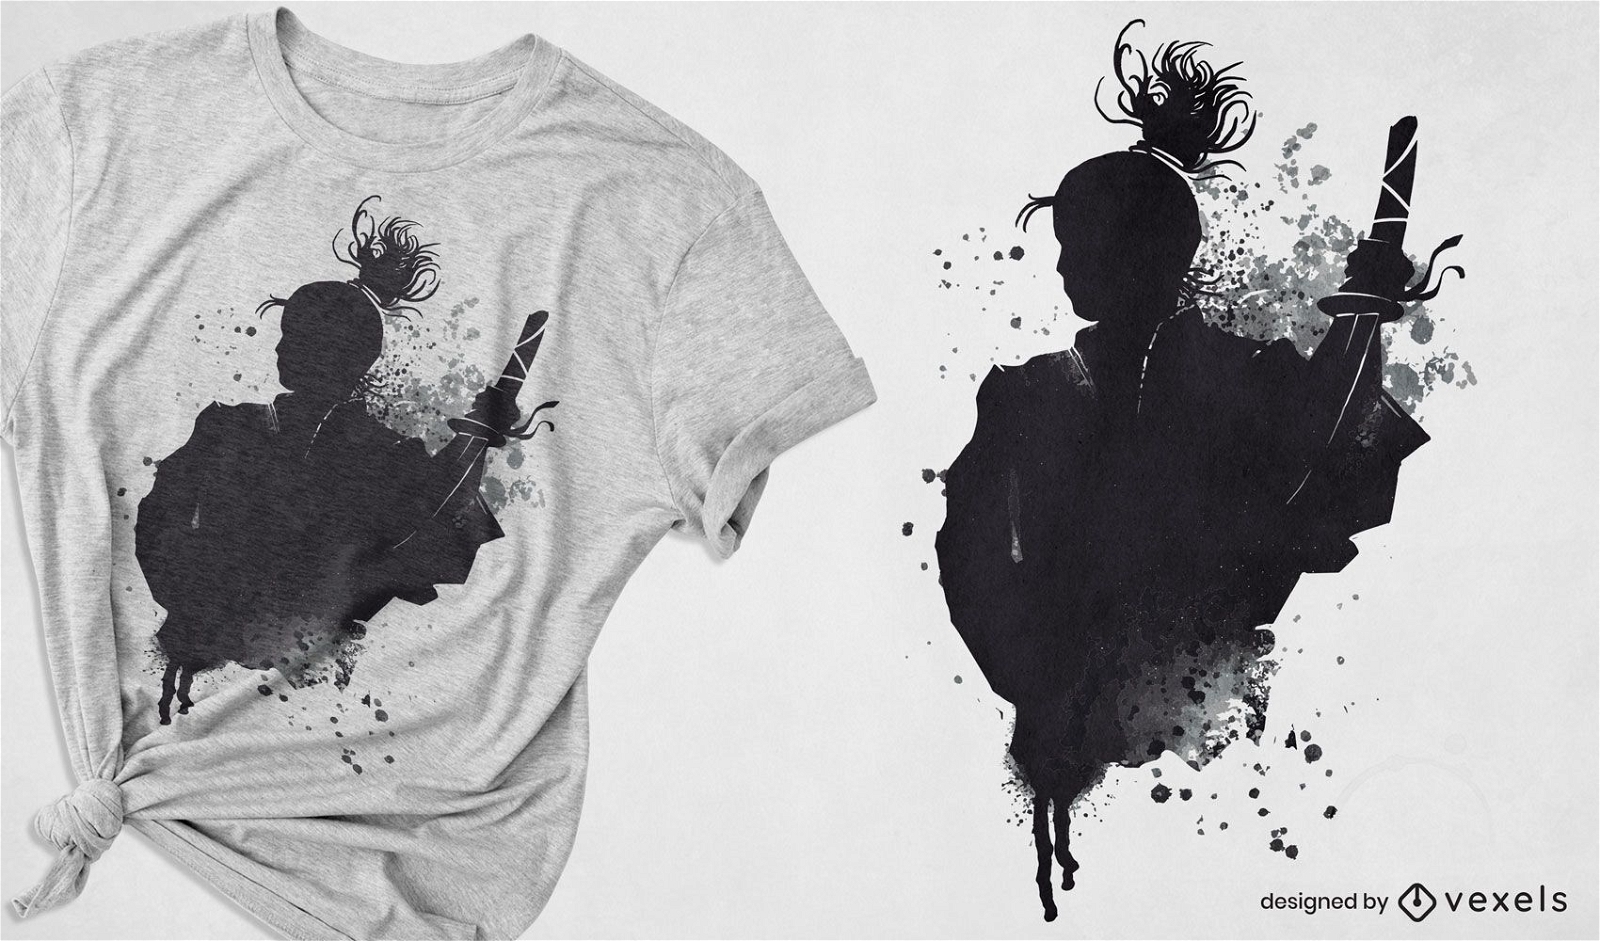 Desenho de t-shirt com arte em tinta de guerreiro samurai japon?s